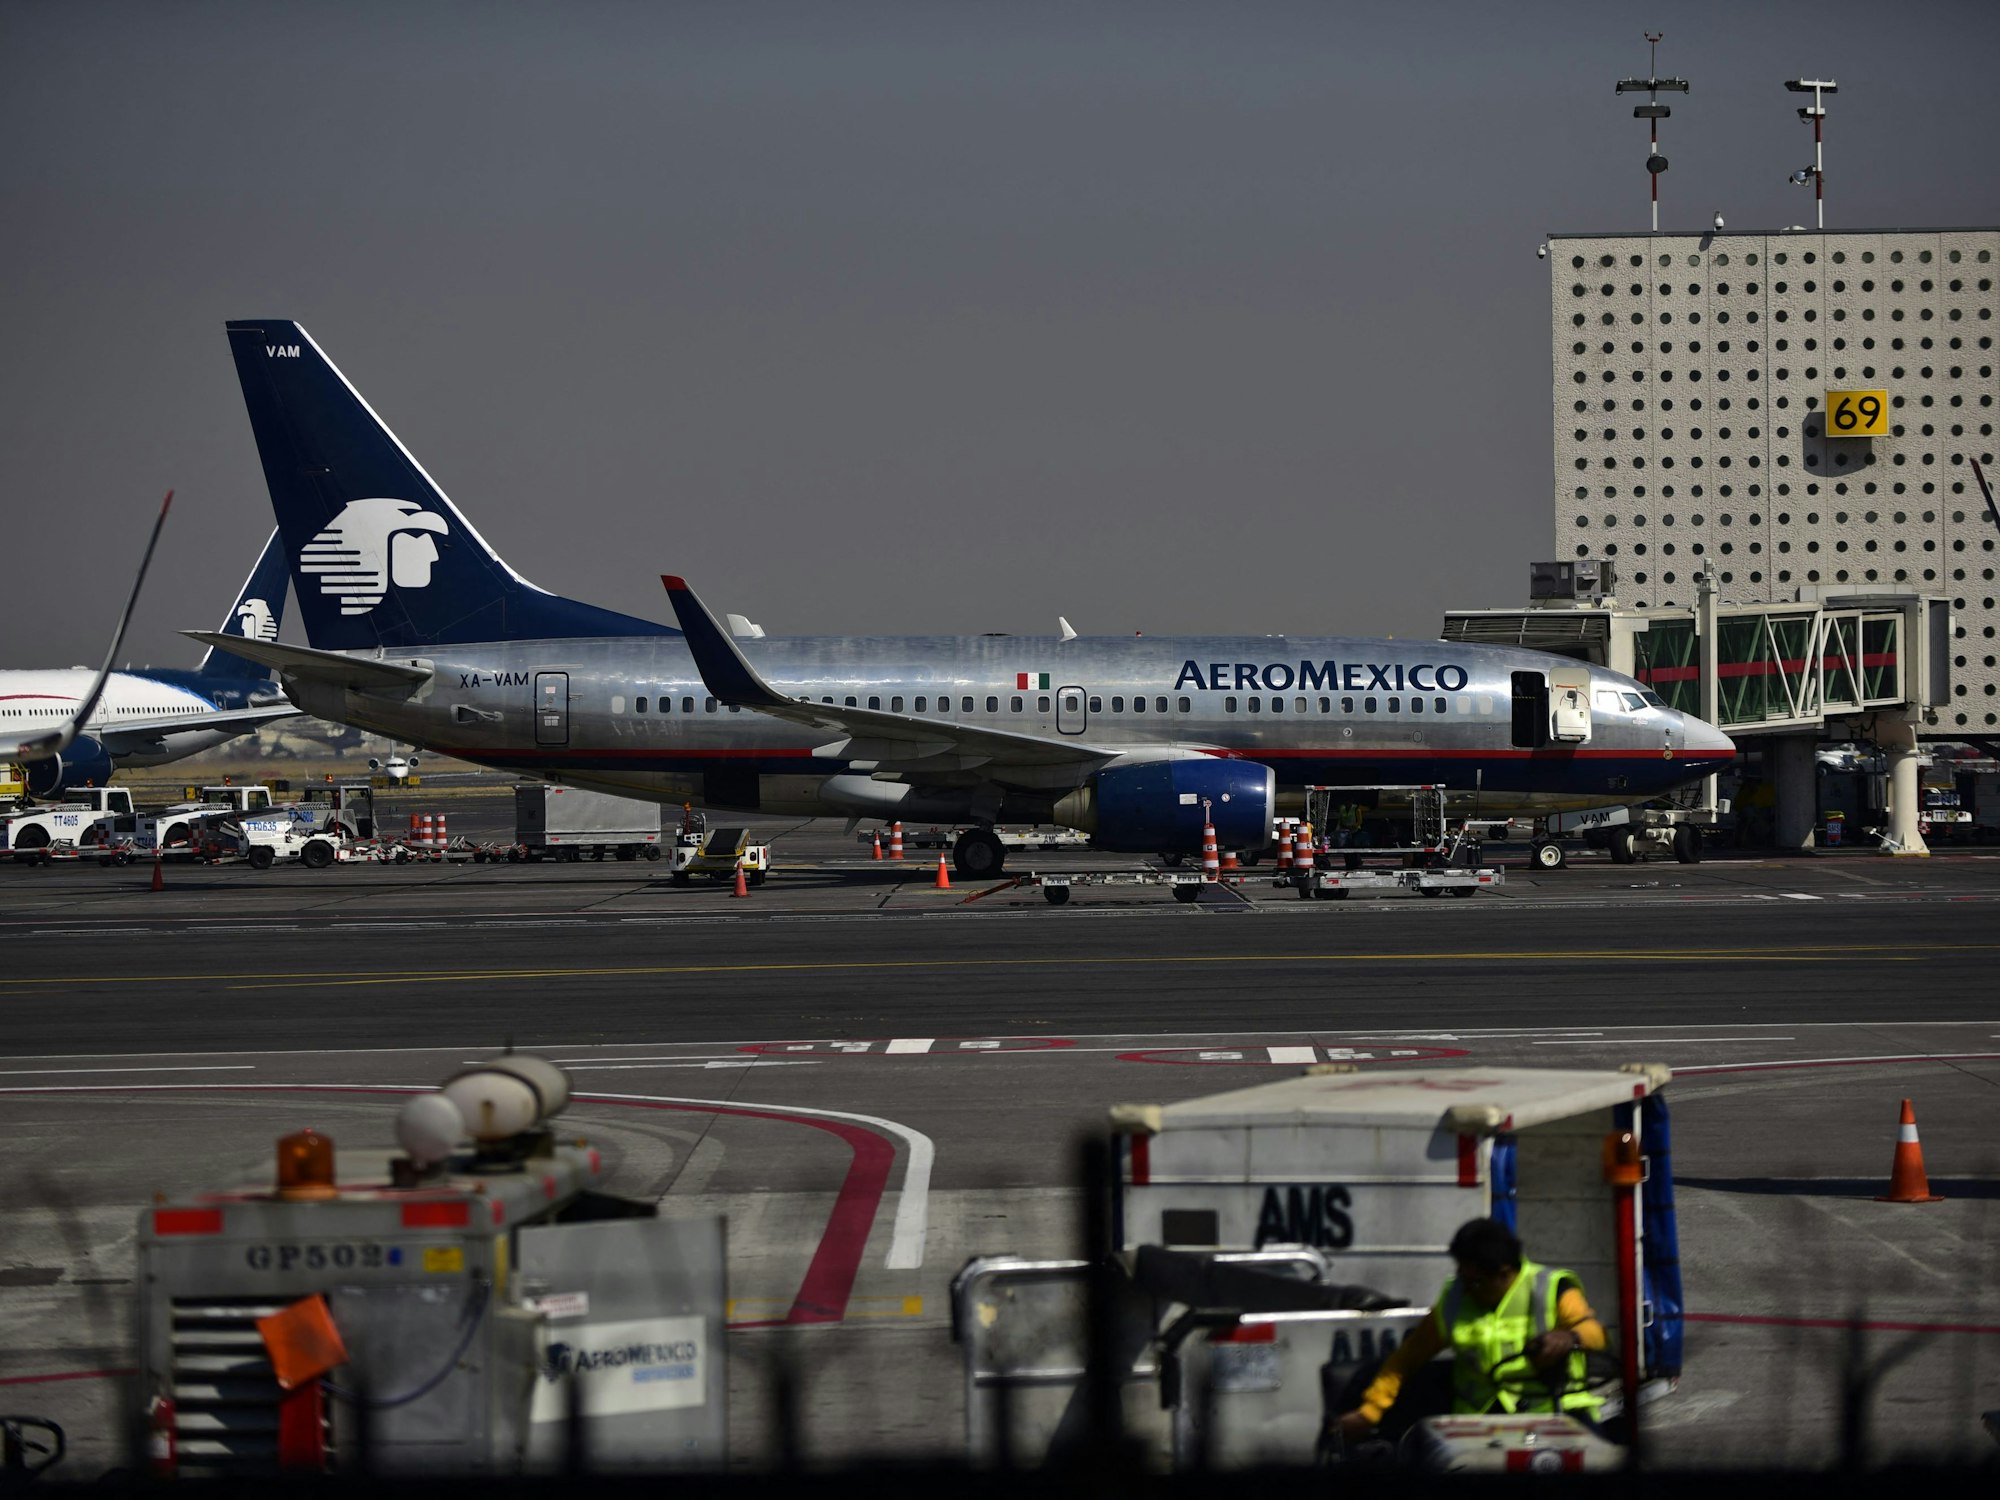 Ein Flugzeug der Airline AeroMexico steht auf dem Flughafen in Mexiko-Stadt.